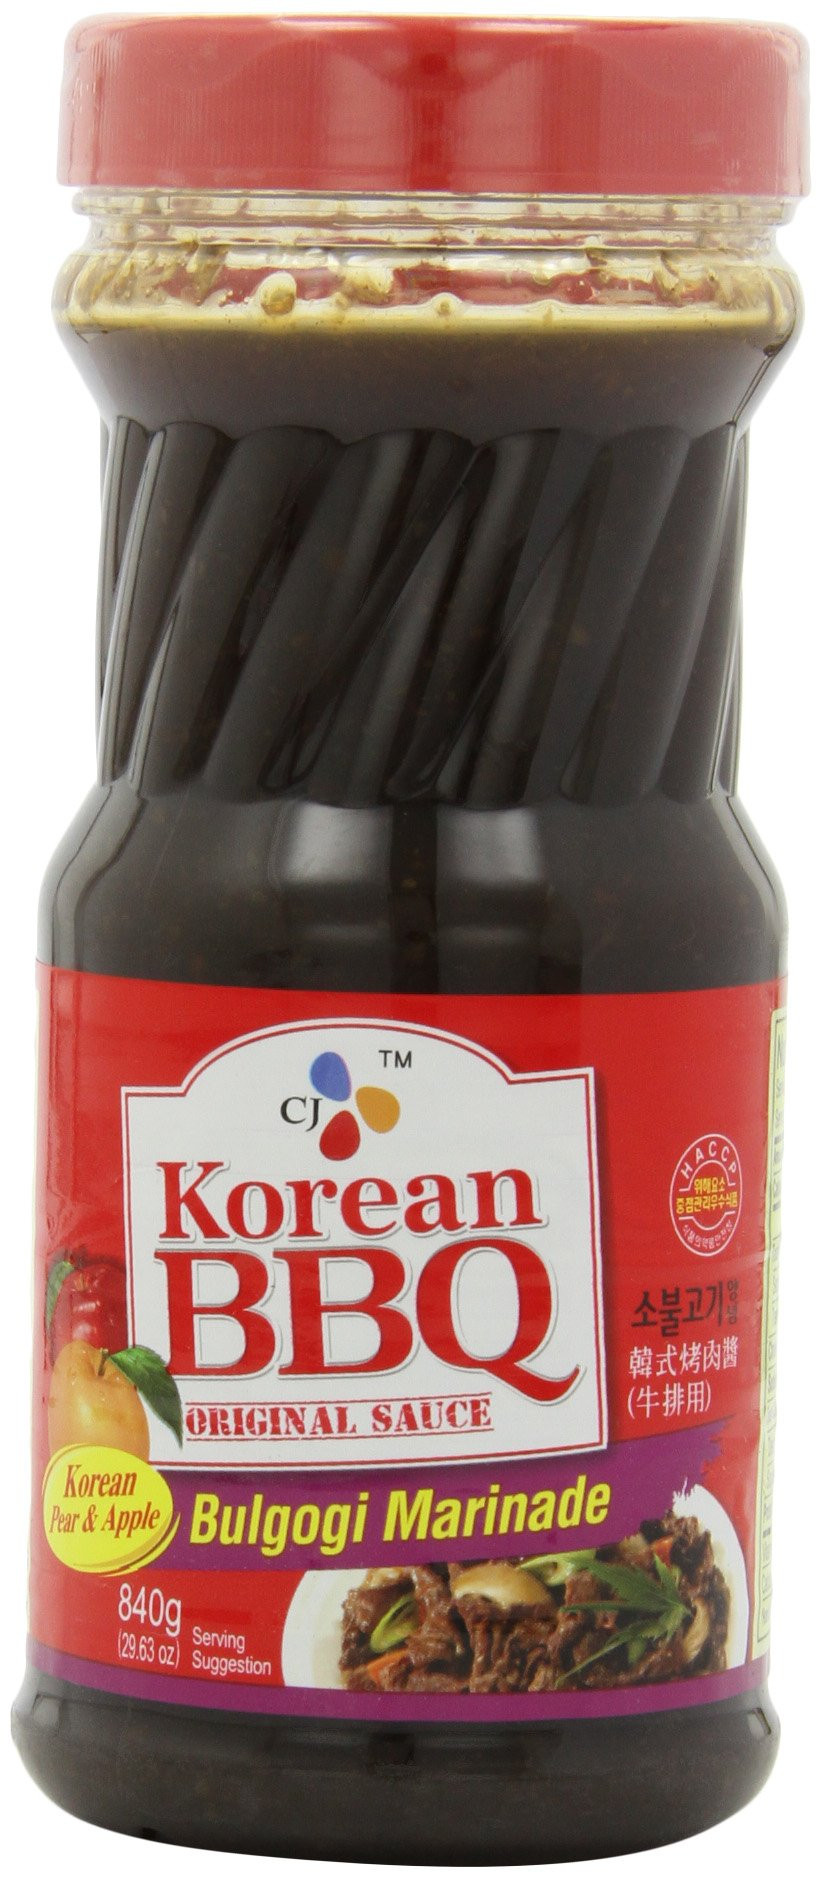 Korean Bbq Sauce
 Korean BBQ Original Sauce Bulgogi Marinade Made in Korea